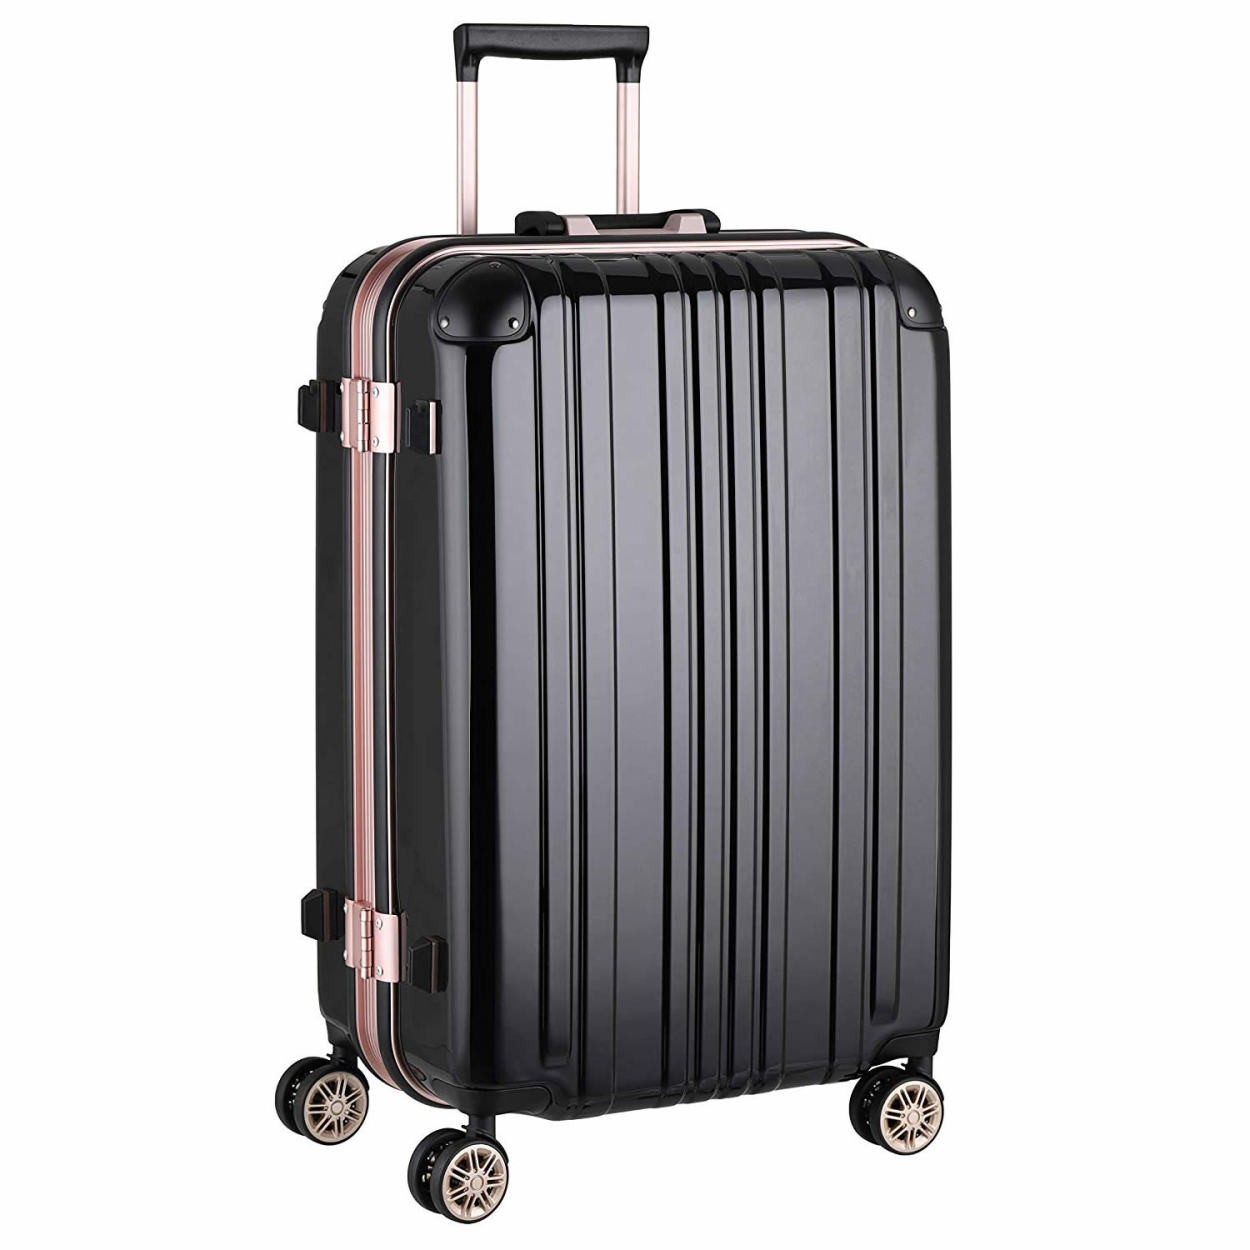 スーツケース キャリーバッグ トランクケース レディースバッグ Mサイズ 中型 超軽量 おしゃれ かわいい キャリーケース キャリーバッグ 5122 62 5122 62 スーツケースのマリエナマキ 通販 Yahoo ショッピング